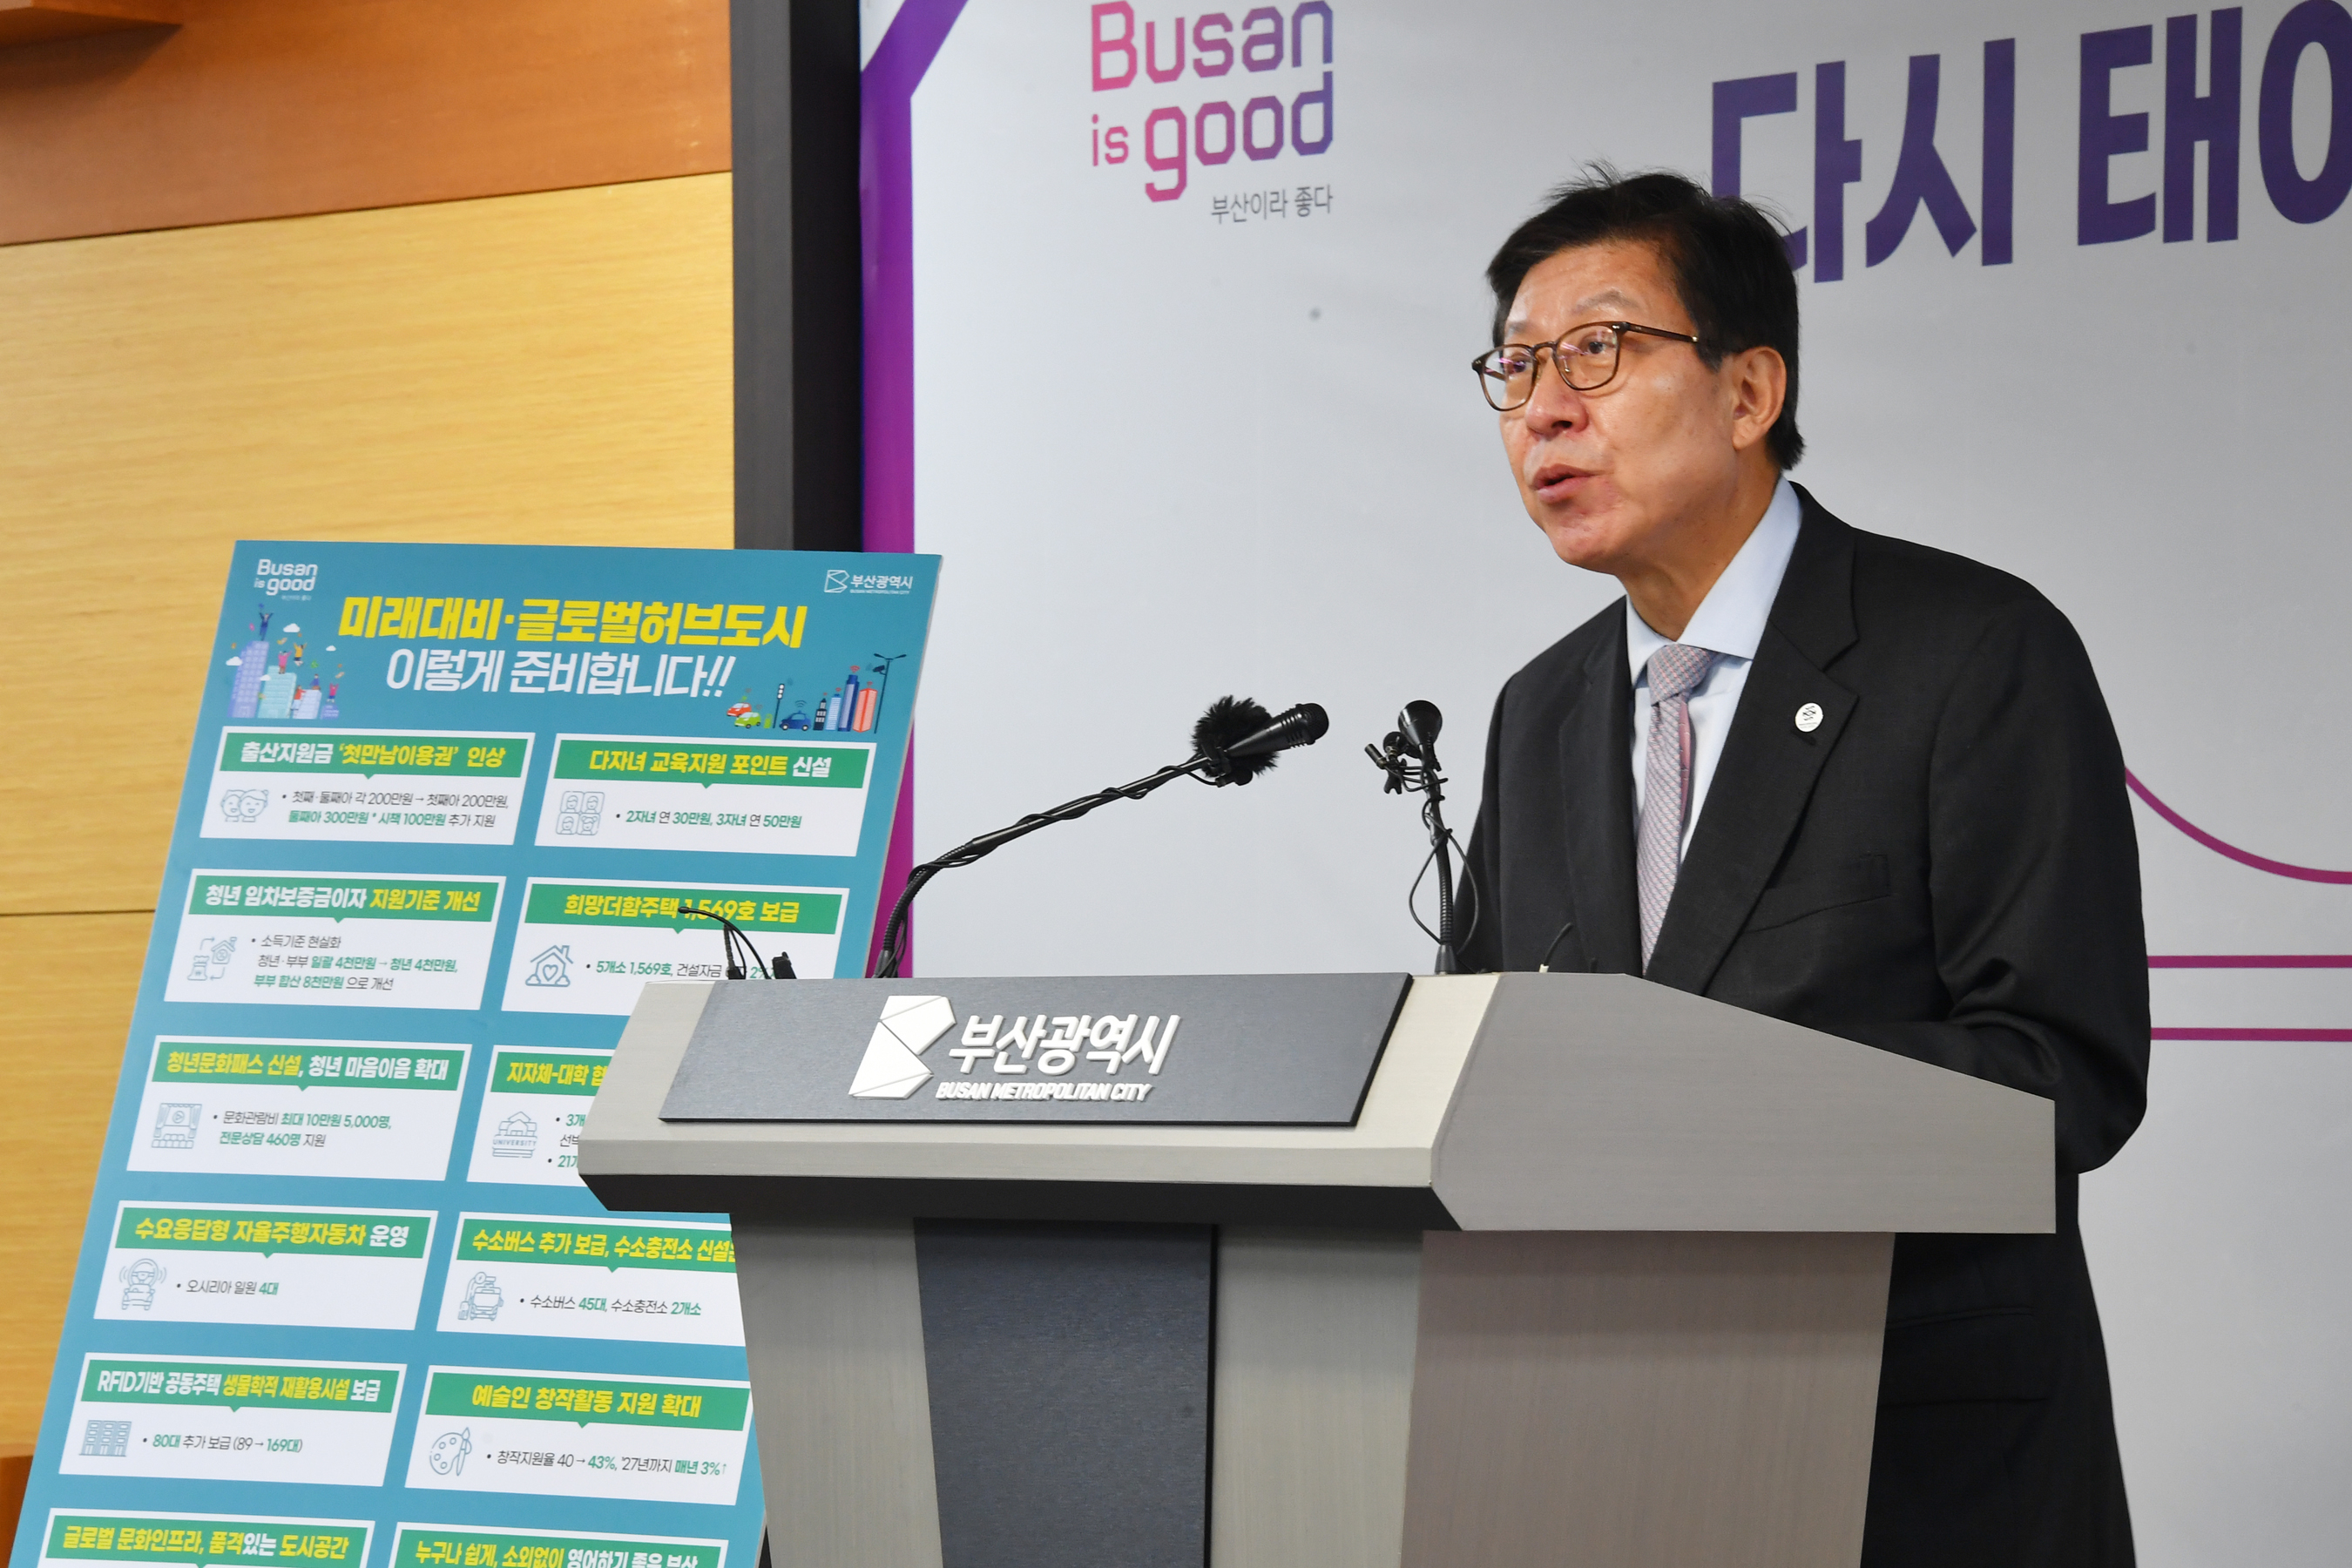 9일 부산시청에서 열린 기자회견에서 박형준 부산시장이 내년도 본예산안에 대해 설명하고 있다. 부산시 제공